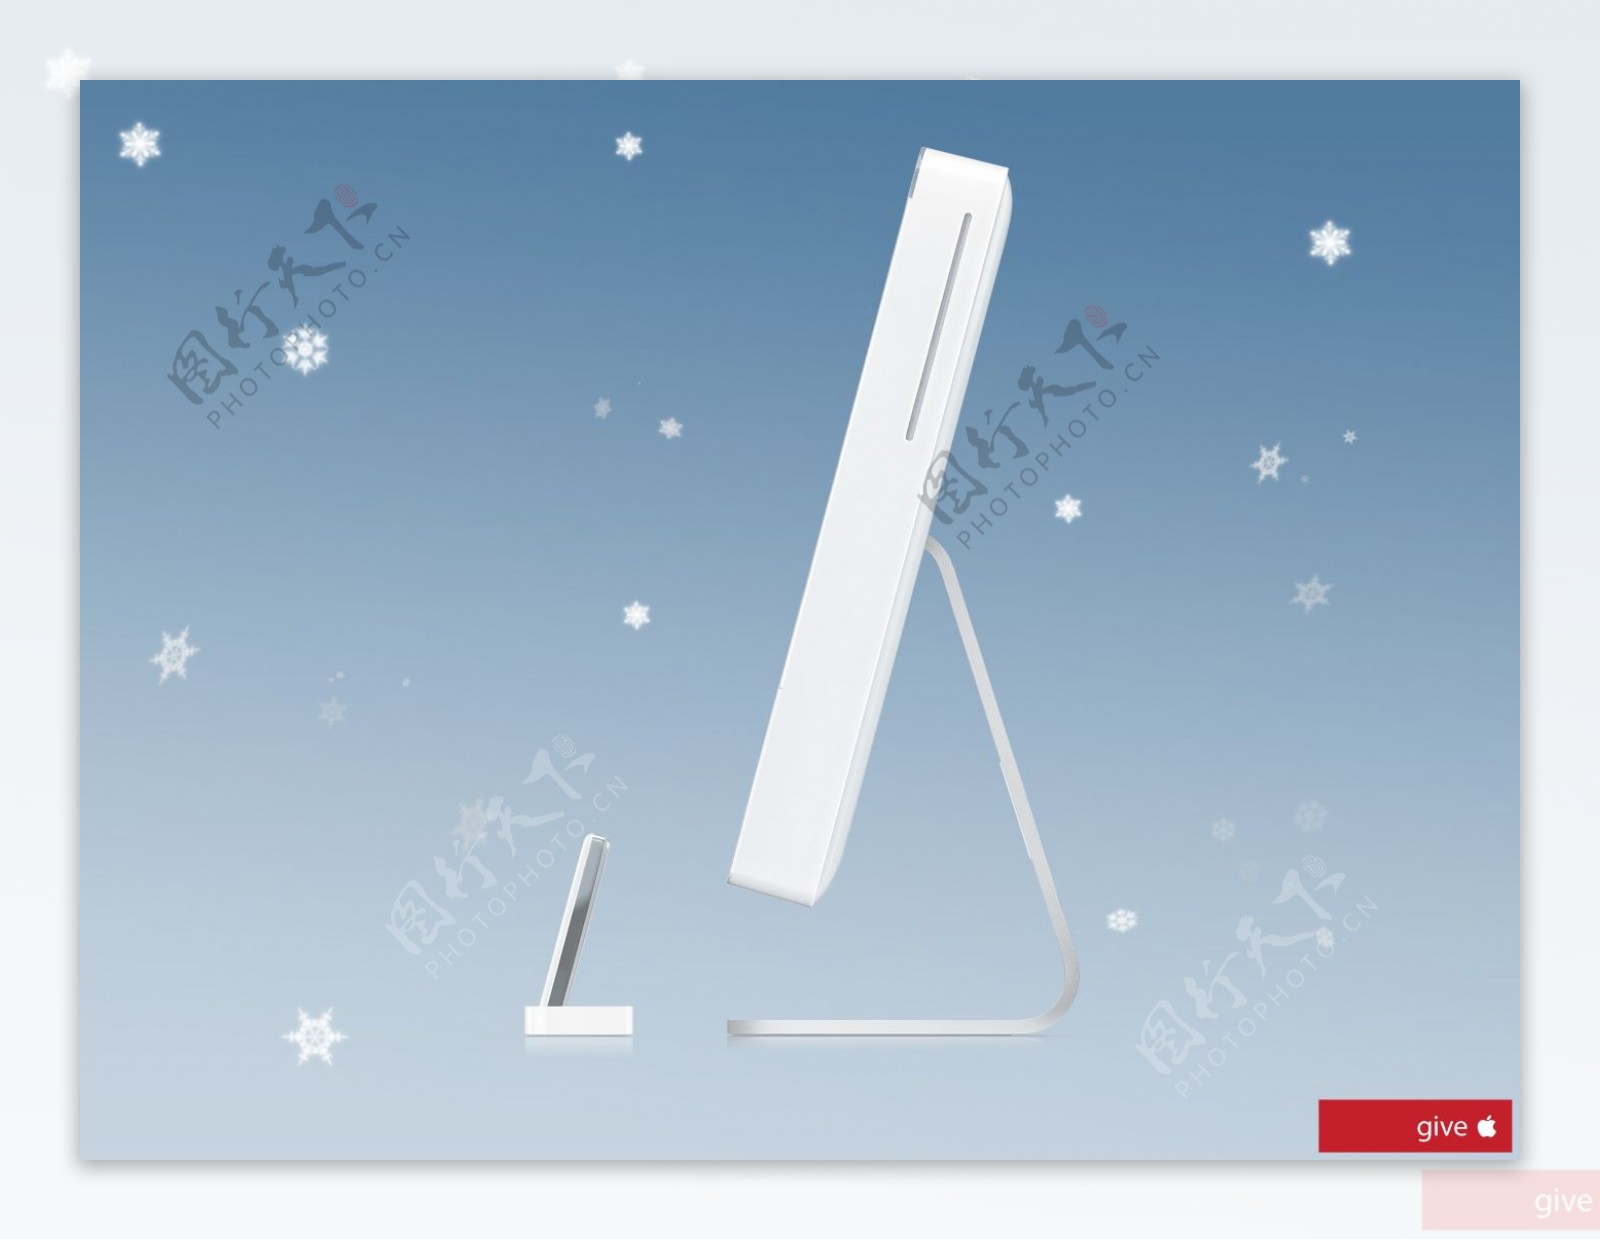 iMac的圣诞愿望